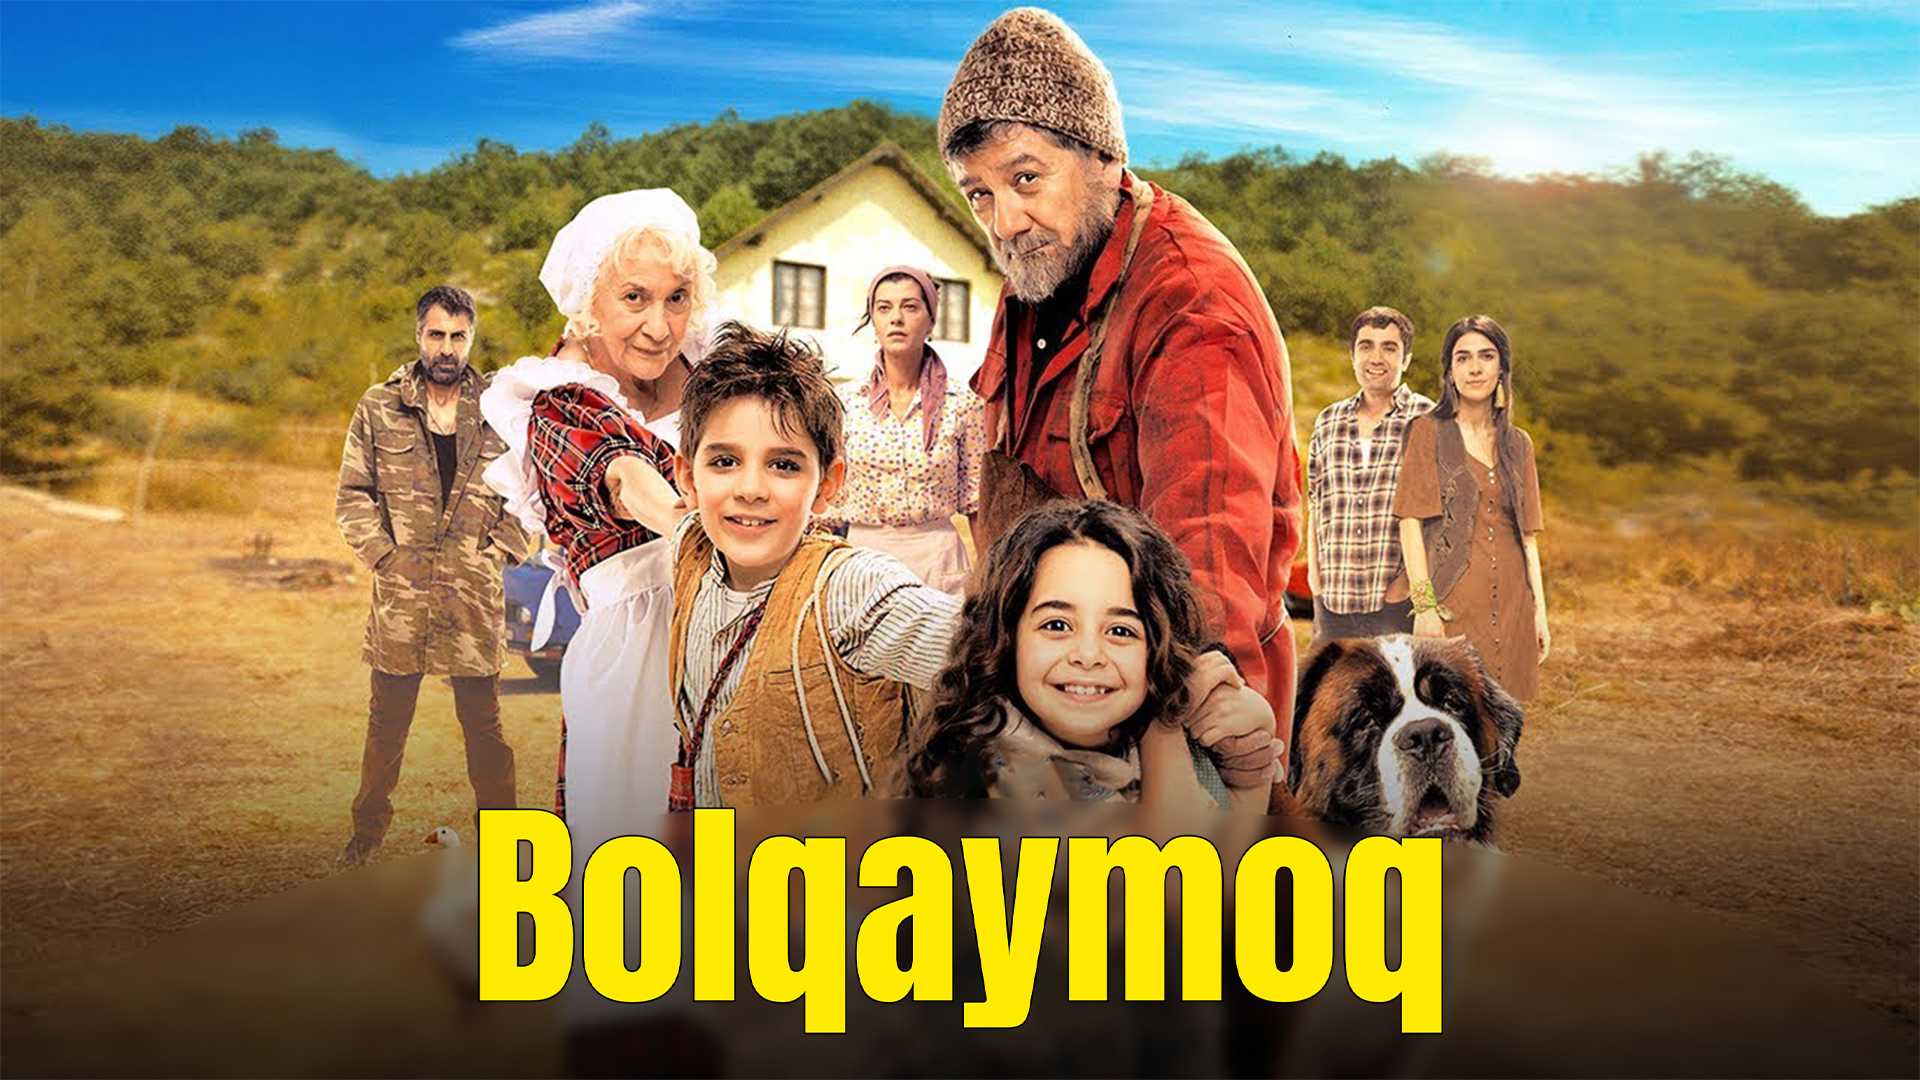 Bolqaymoq